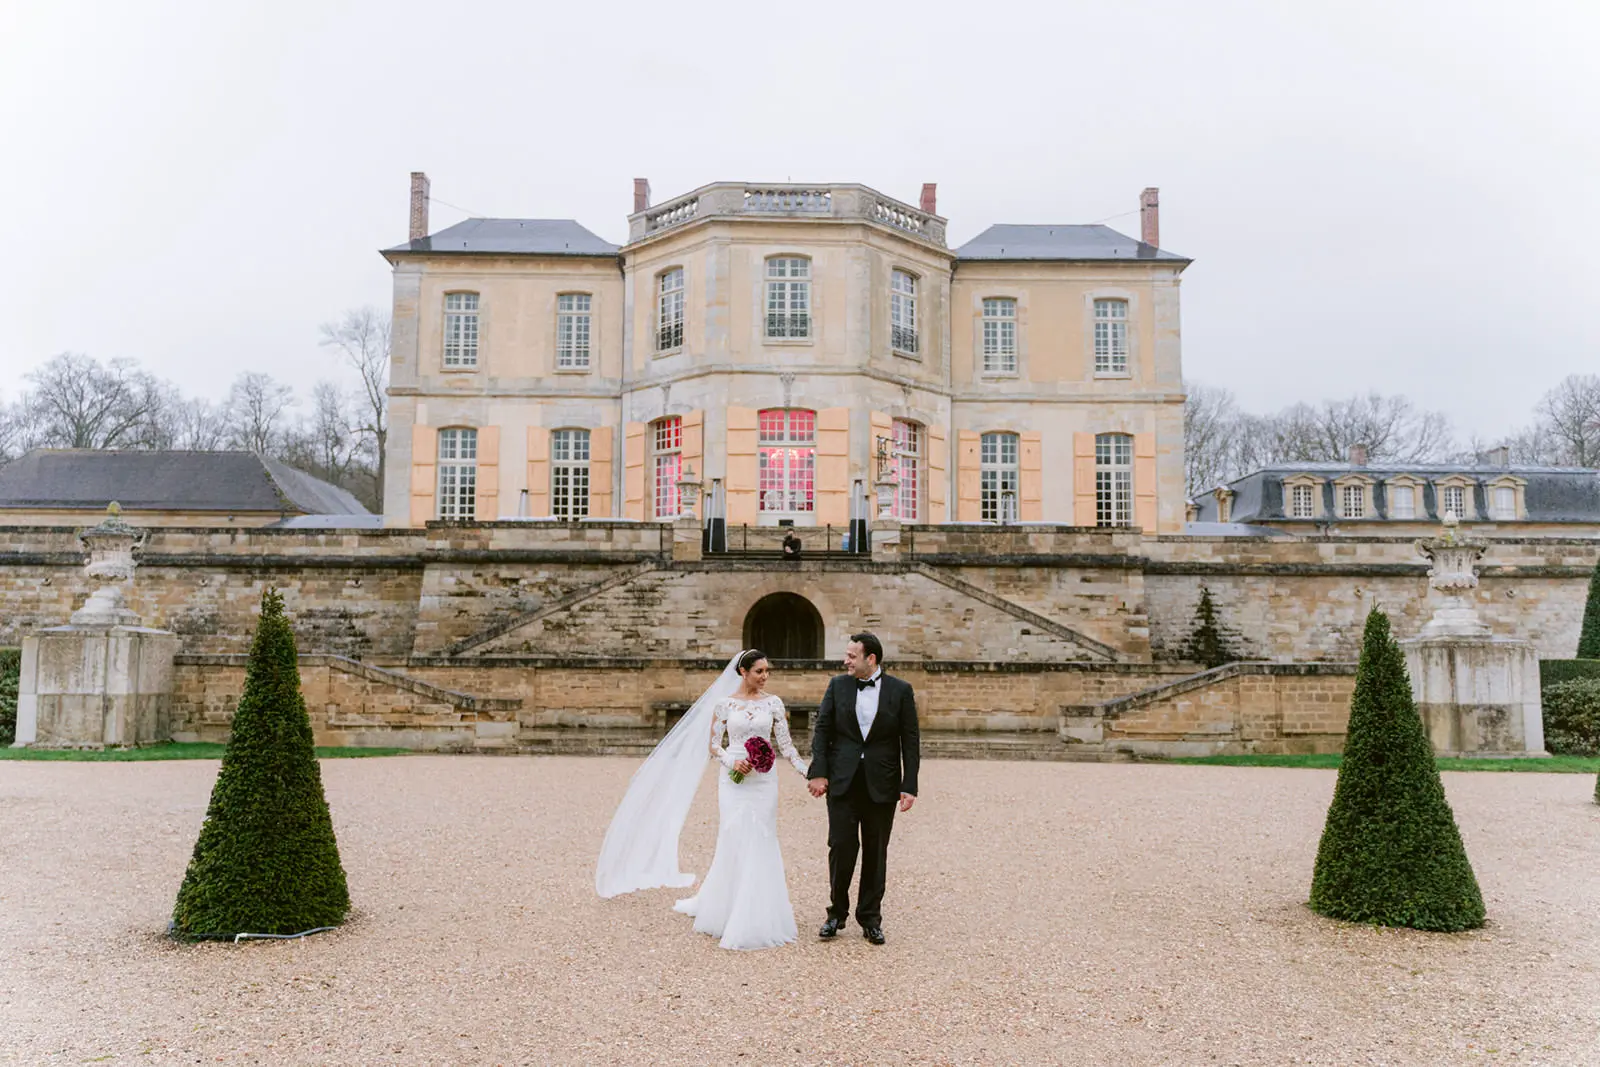 wedding photography at chateau de villette paris france